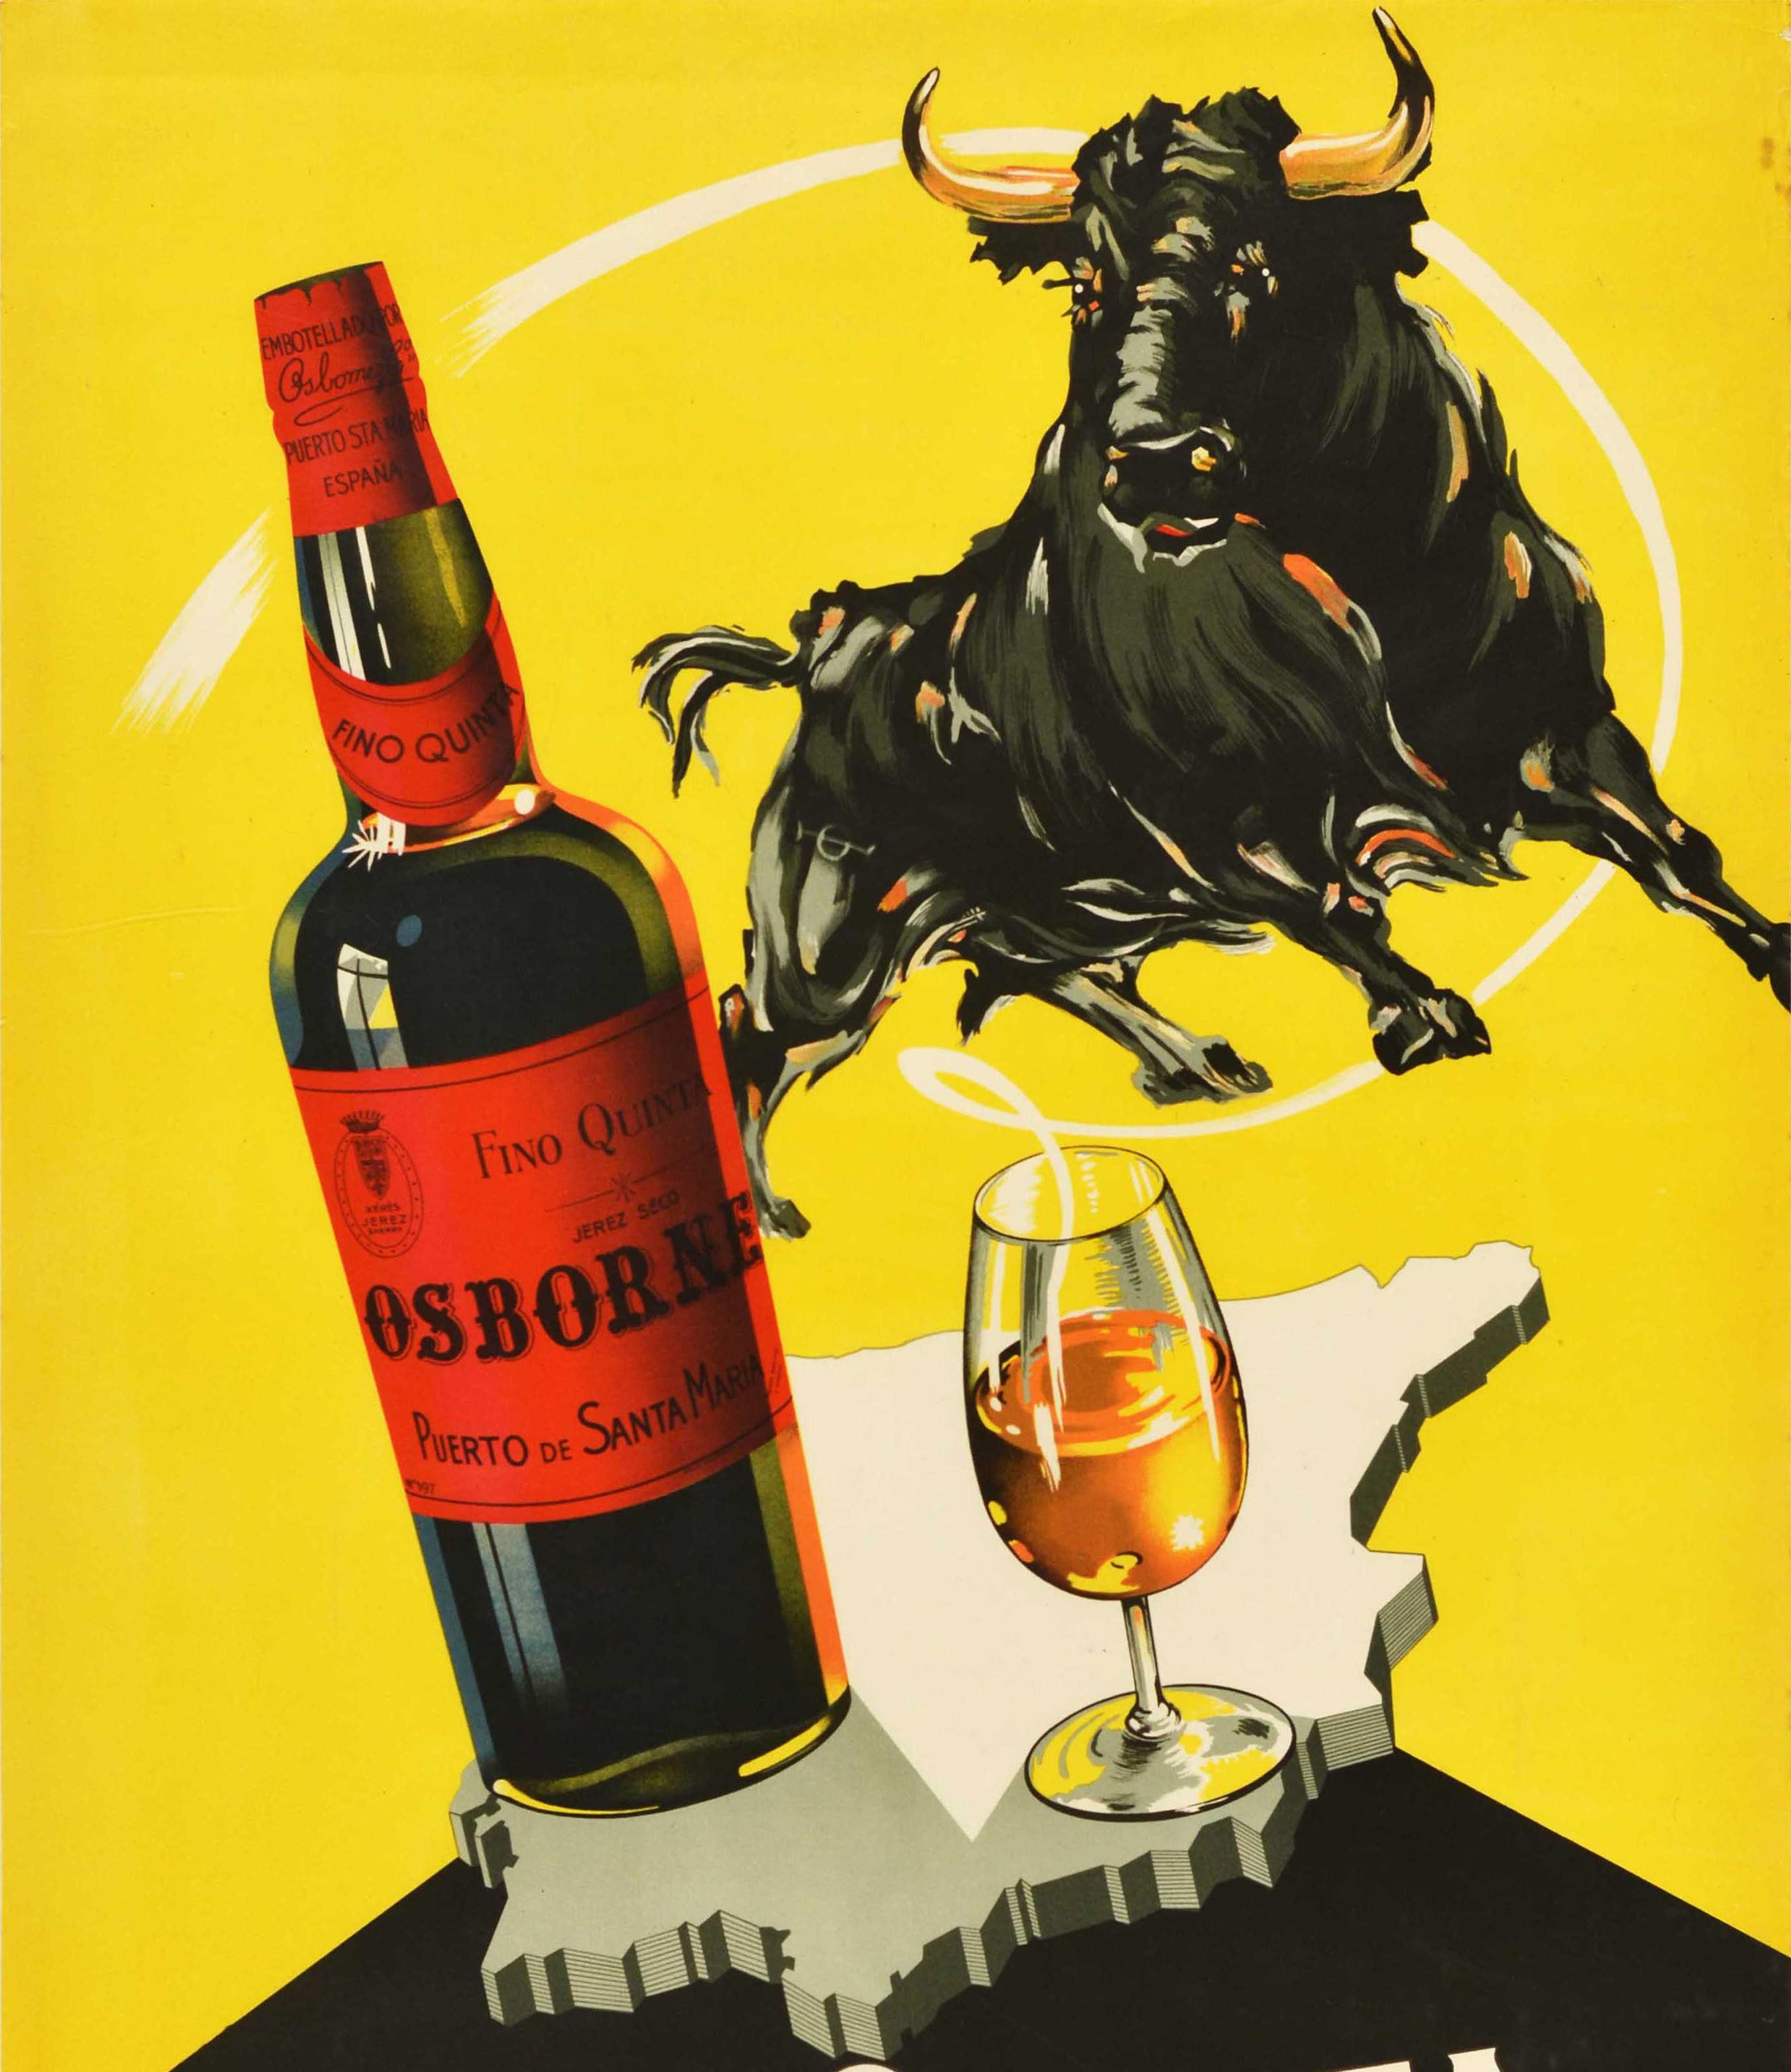 Original Vintage-Getränke-Werbeplakat für Fino Quinta Osborne Puerto de Santa Maria Espana mit einem großen Design, das einen Stier über einer Flasche Wein neben einem Glas auf einem Umriss der Karte von Spanien mit dem Titel Text in fetten